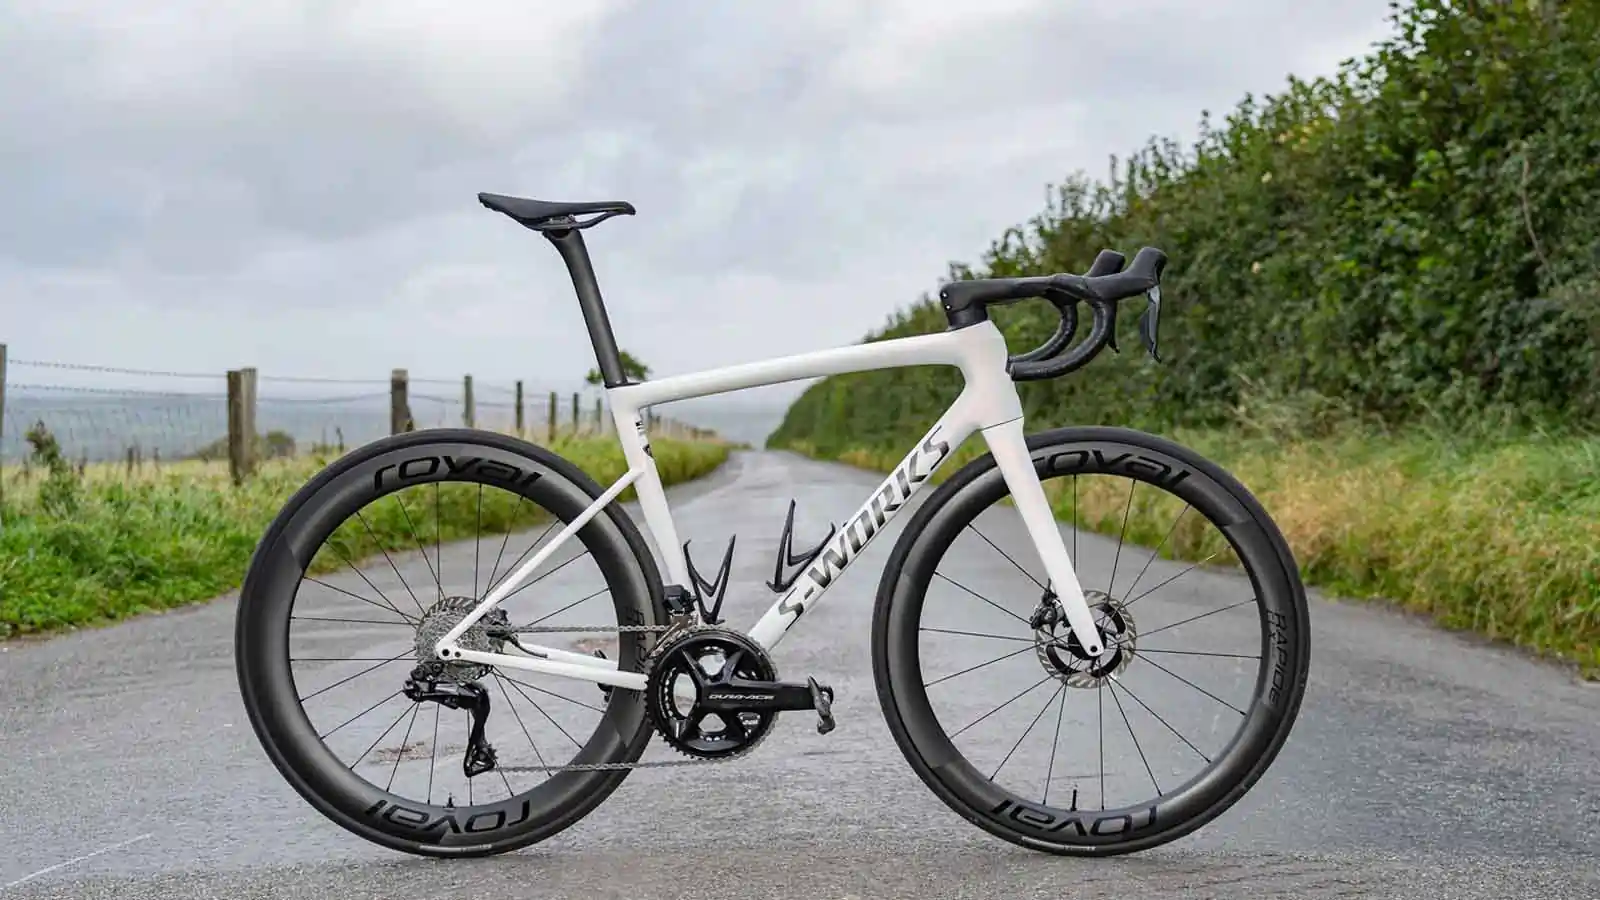   Specialized: Road Bike + £10,000